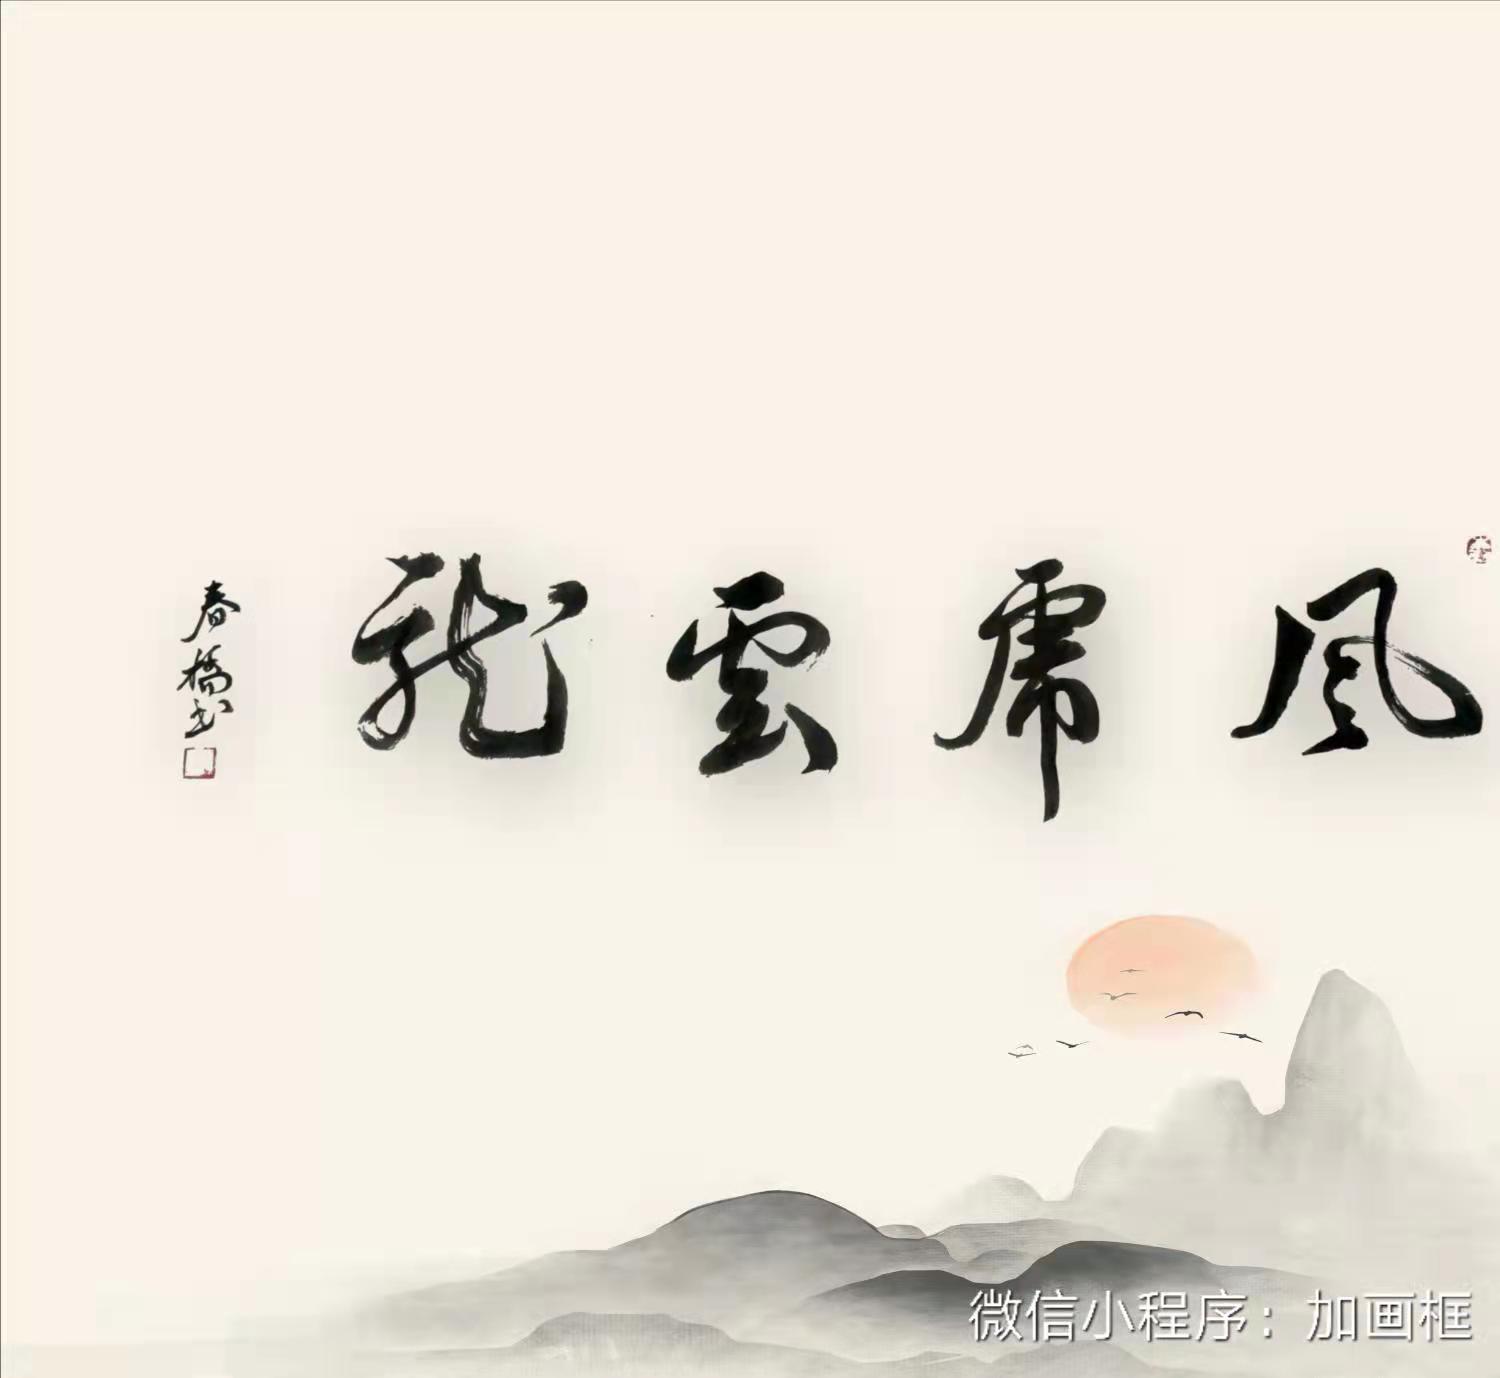 中国大众文化学会名人书画艺术发展委员会——李春桥